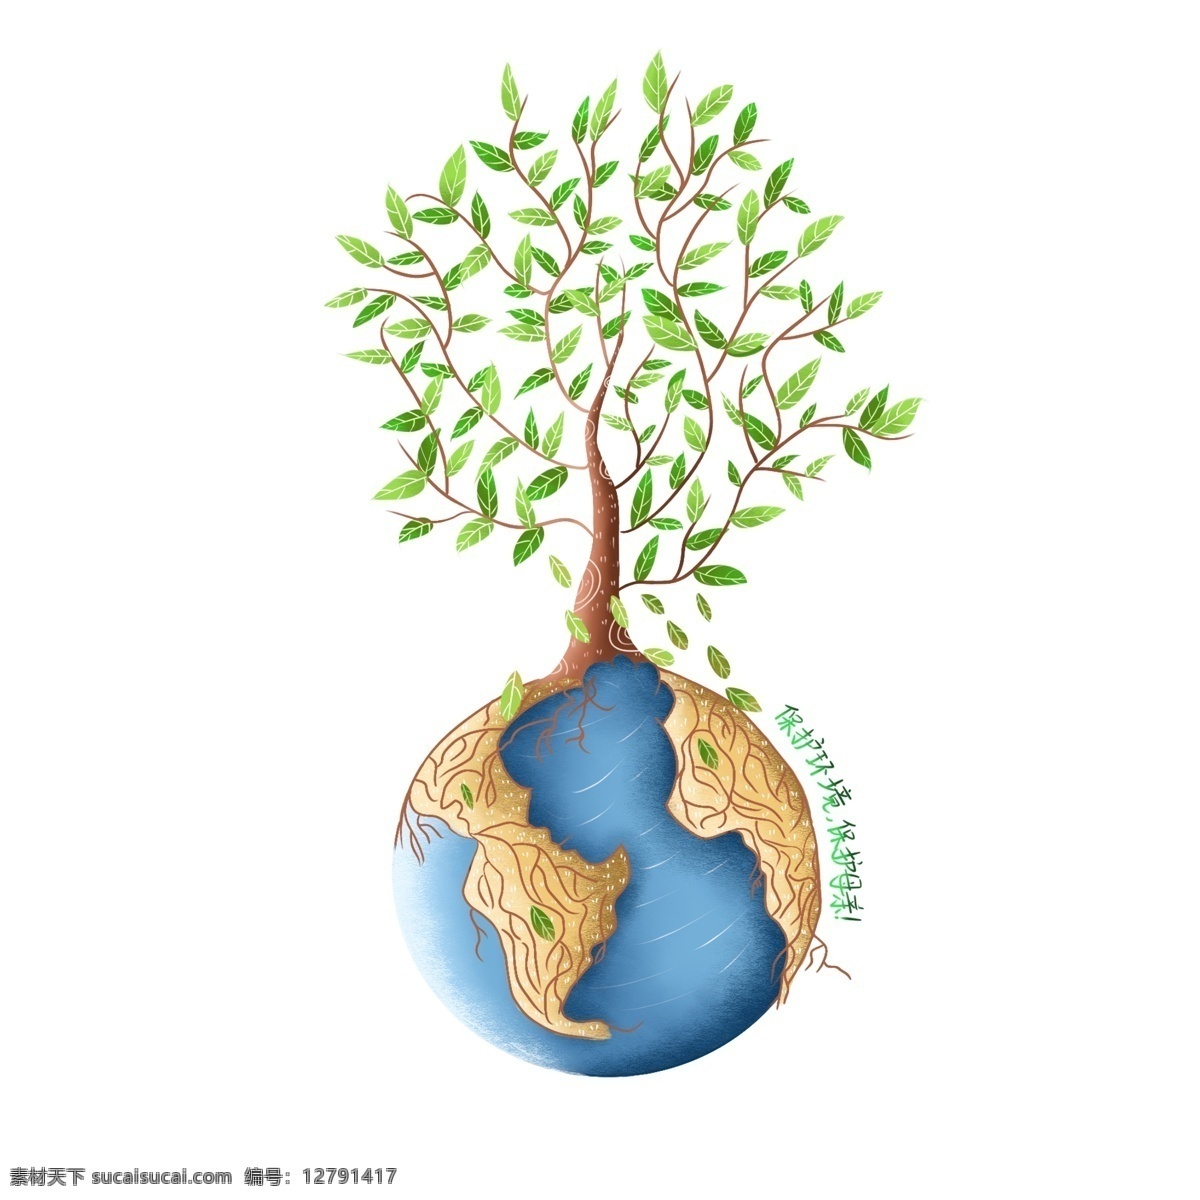 手绘 风正 负 定义 之爱 护 环境保护 地球 母亲 手绘风 正负定义 趋势 爱护环境 地球母亲 绿树 环境 环保